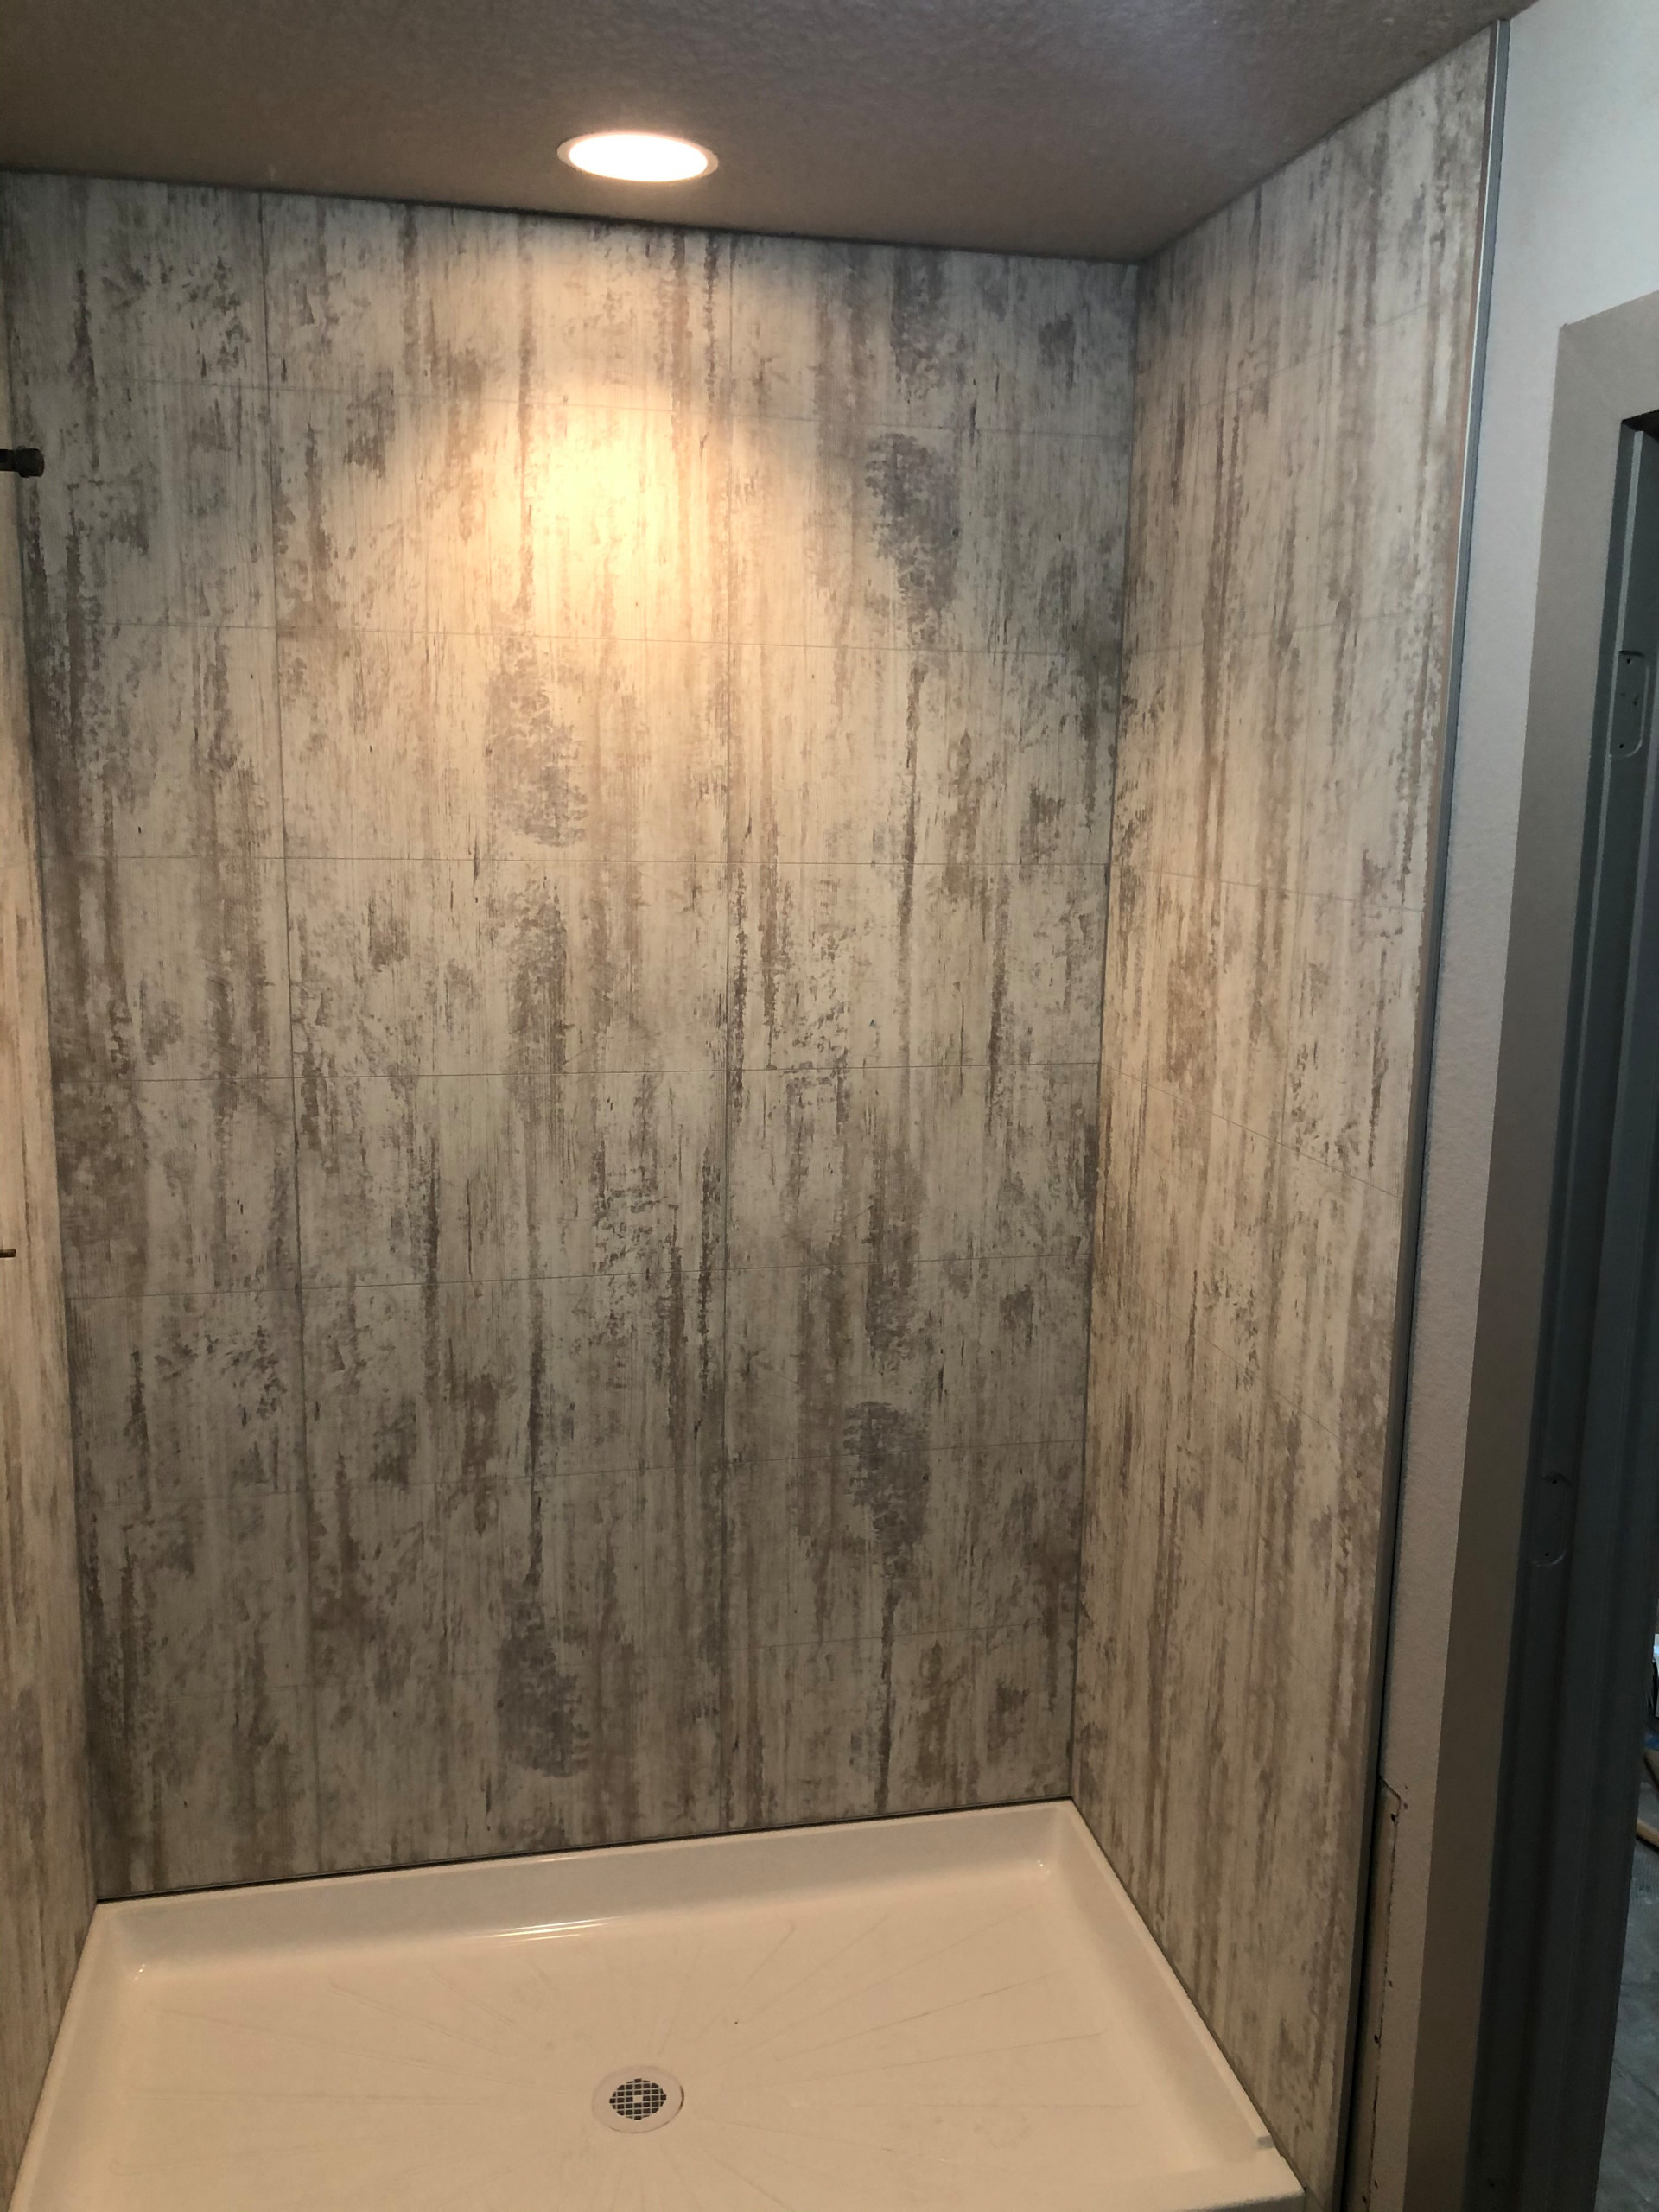 FIBO - Shower/Tub Wall Panels